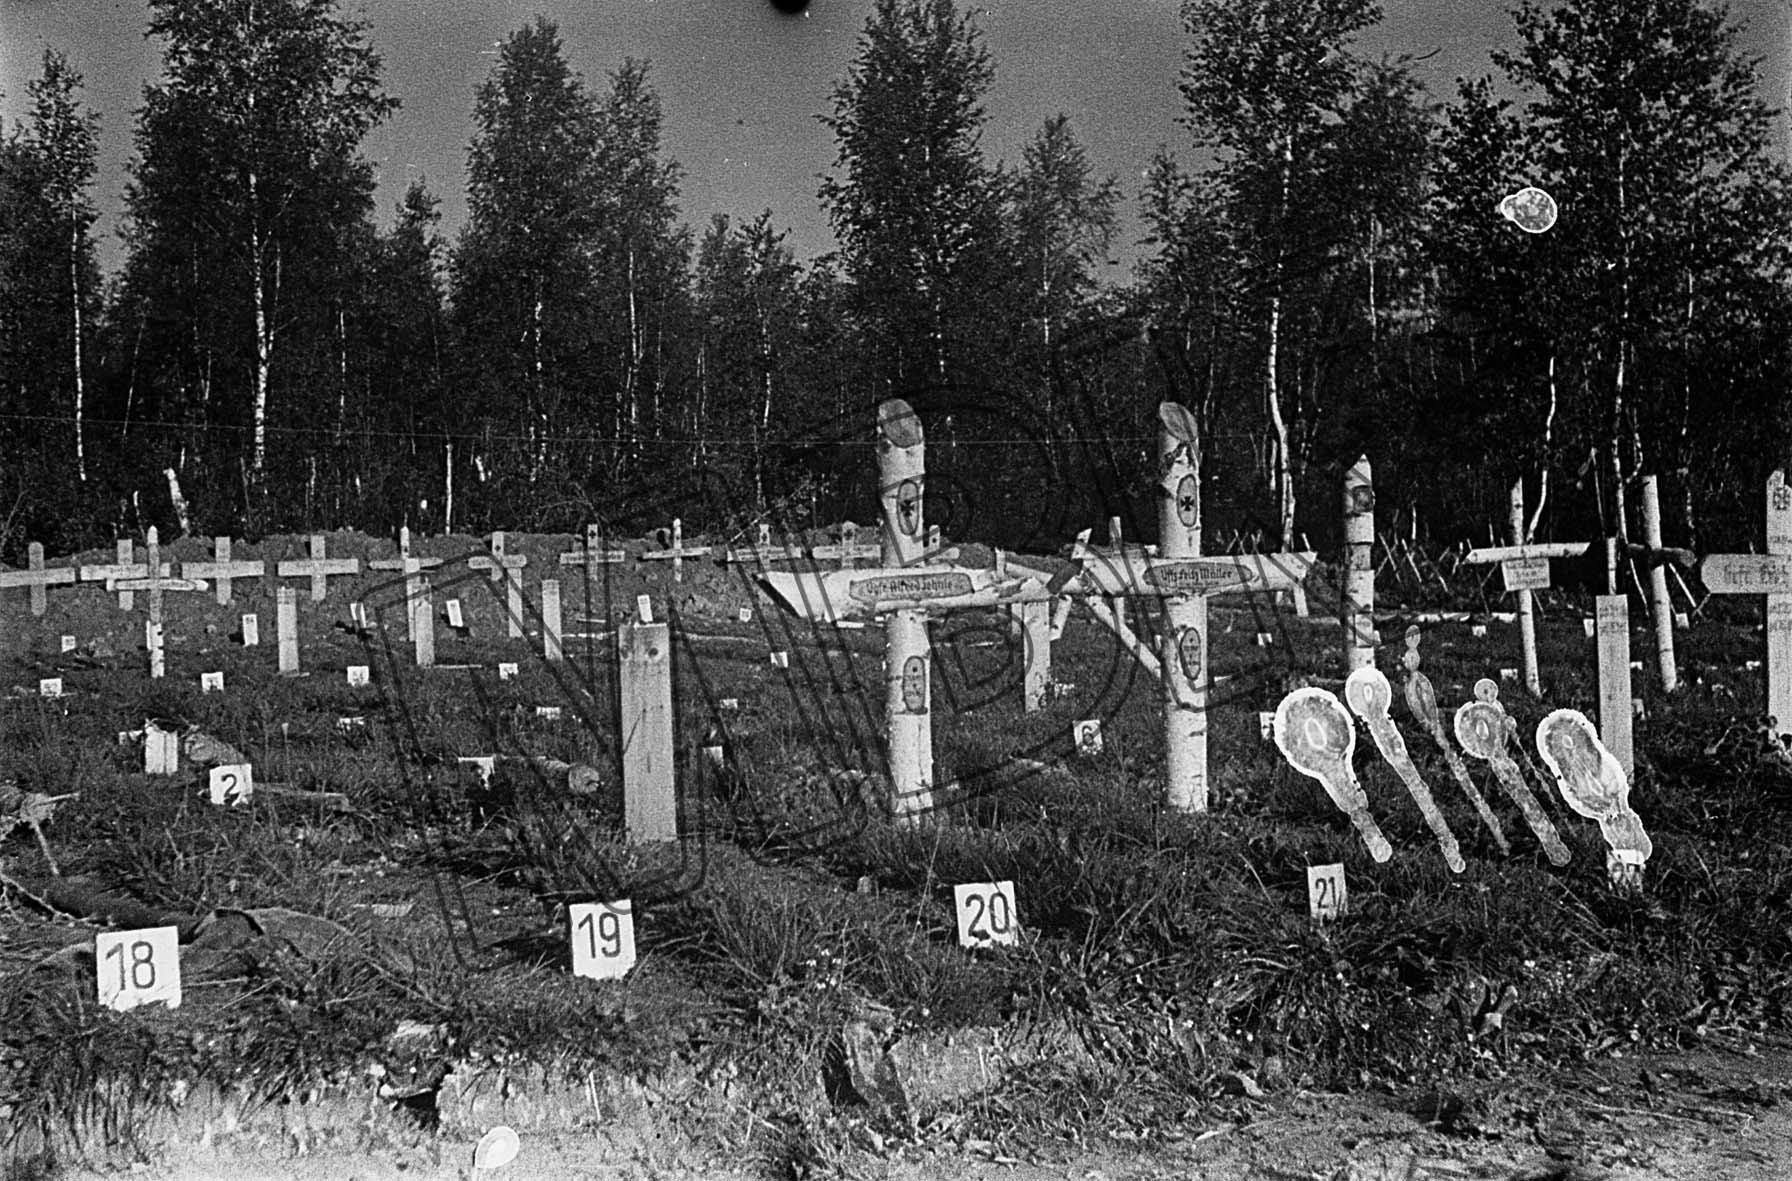 Fotografie: Deutscher Soldatenfriedhof, Gebiet Smolensk, August 1942 (Museum Berlin-Karlshorst RR-P)